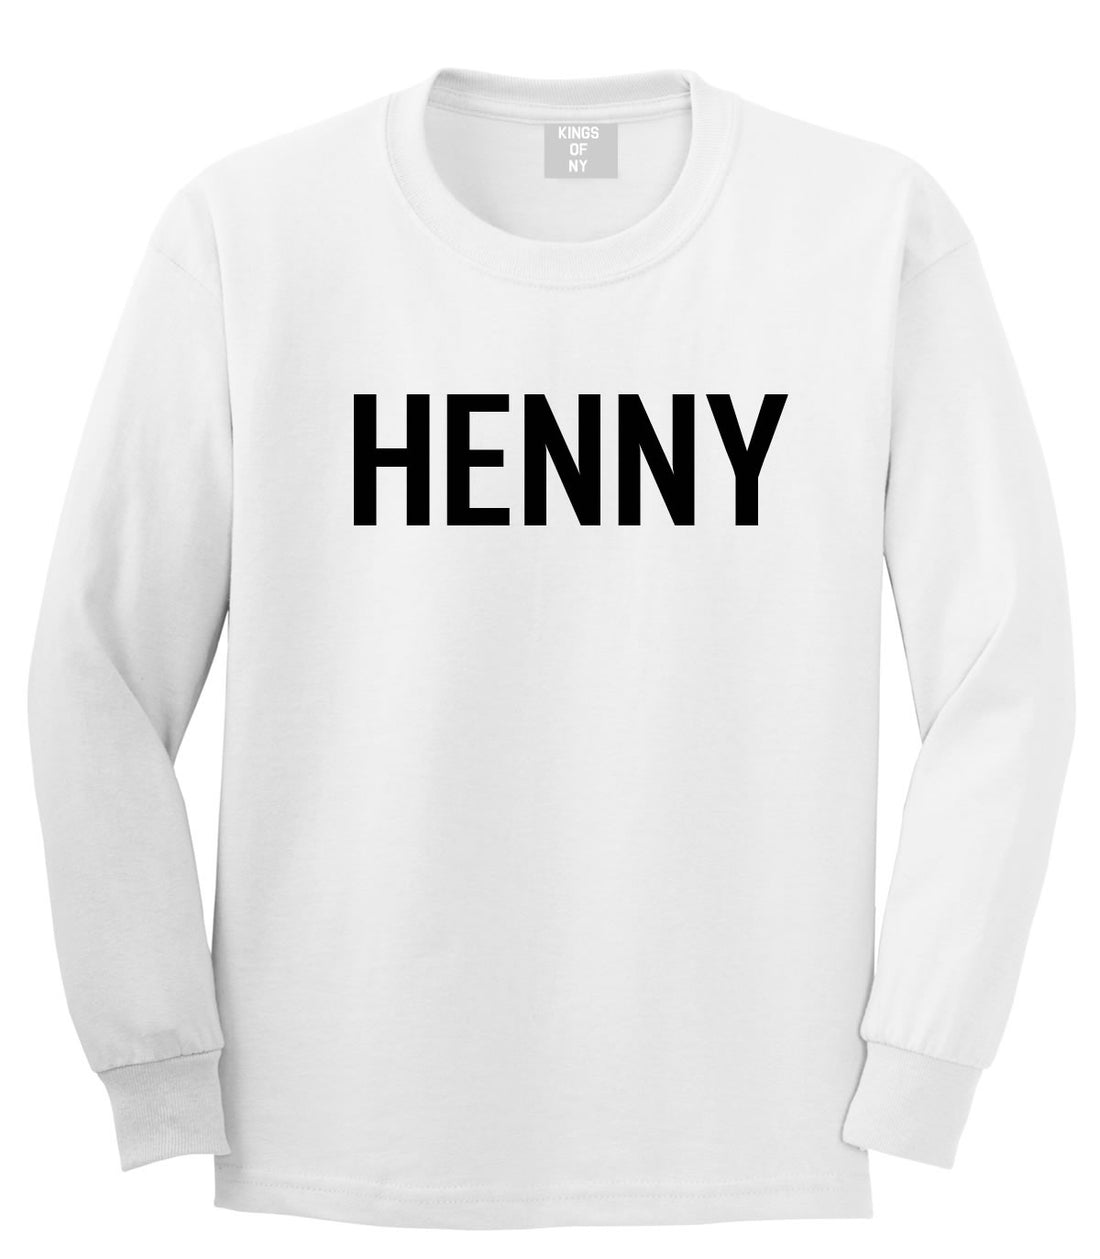 Henny Long Sleeve T-Shirt by Kings Of NY